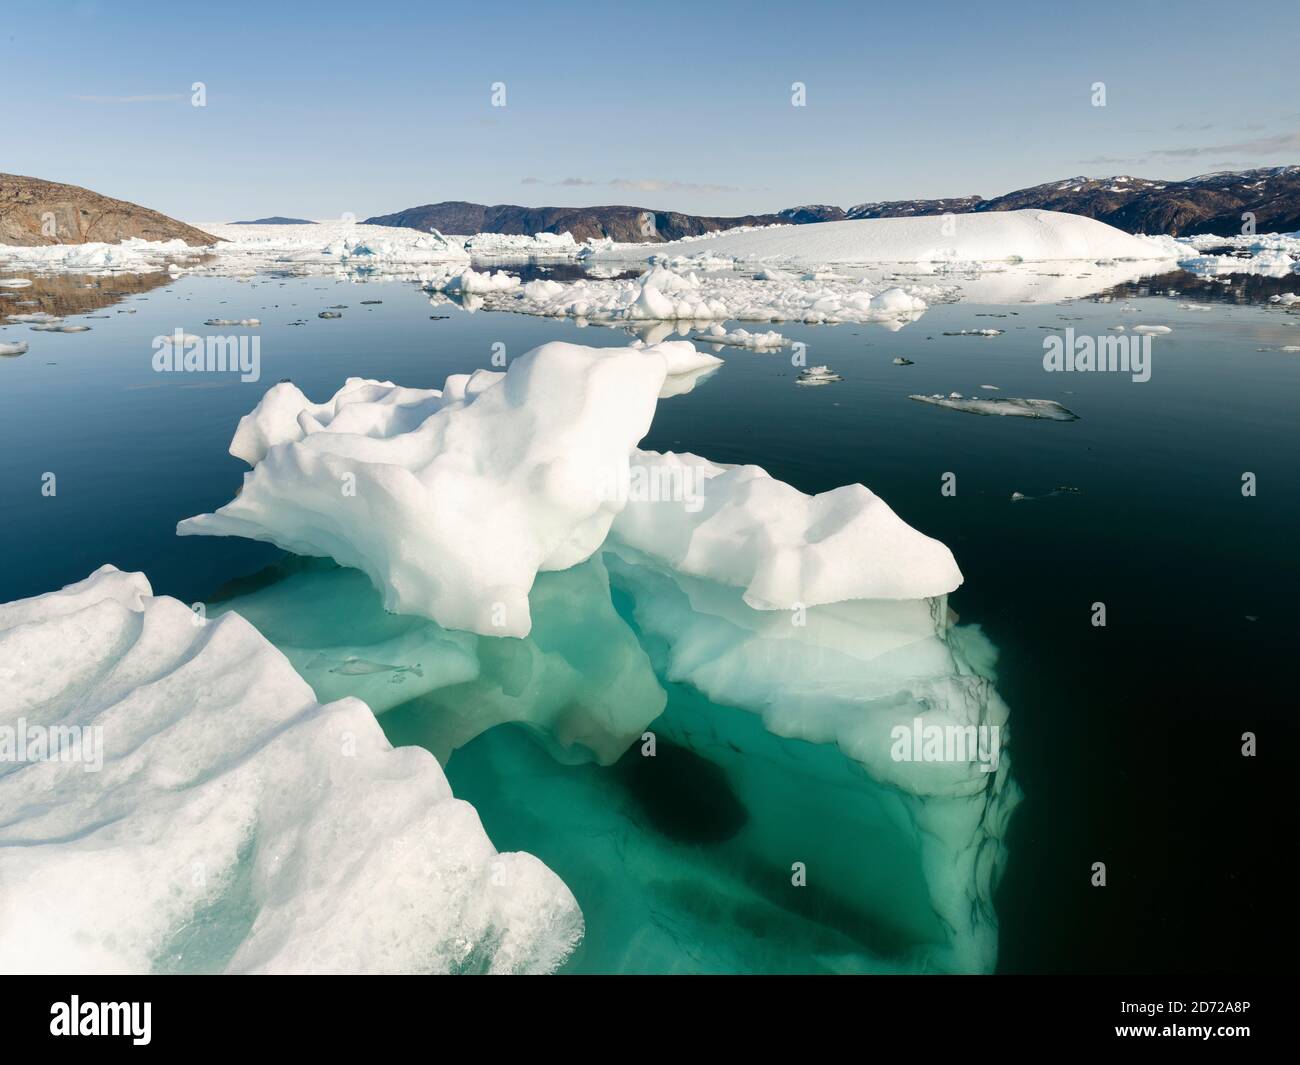 Icebergs dans le système du fjord d'Uummannaq, dans le nord de l'ouest du groenland. Glacier Store Gletscher et la calotte glaciaire en arrière-plan. Amérique, Amérique du Nord Banque D'Images